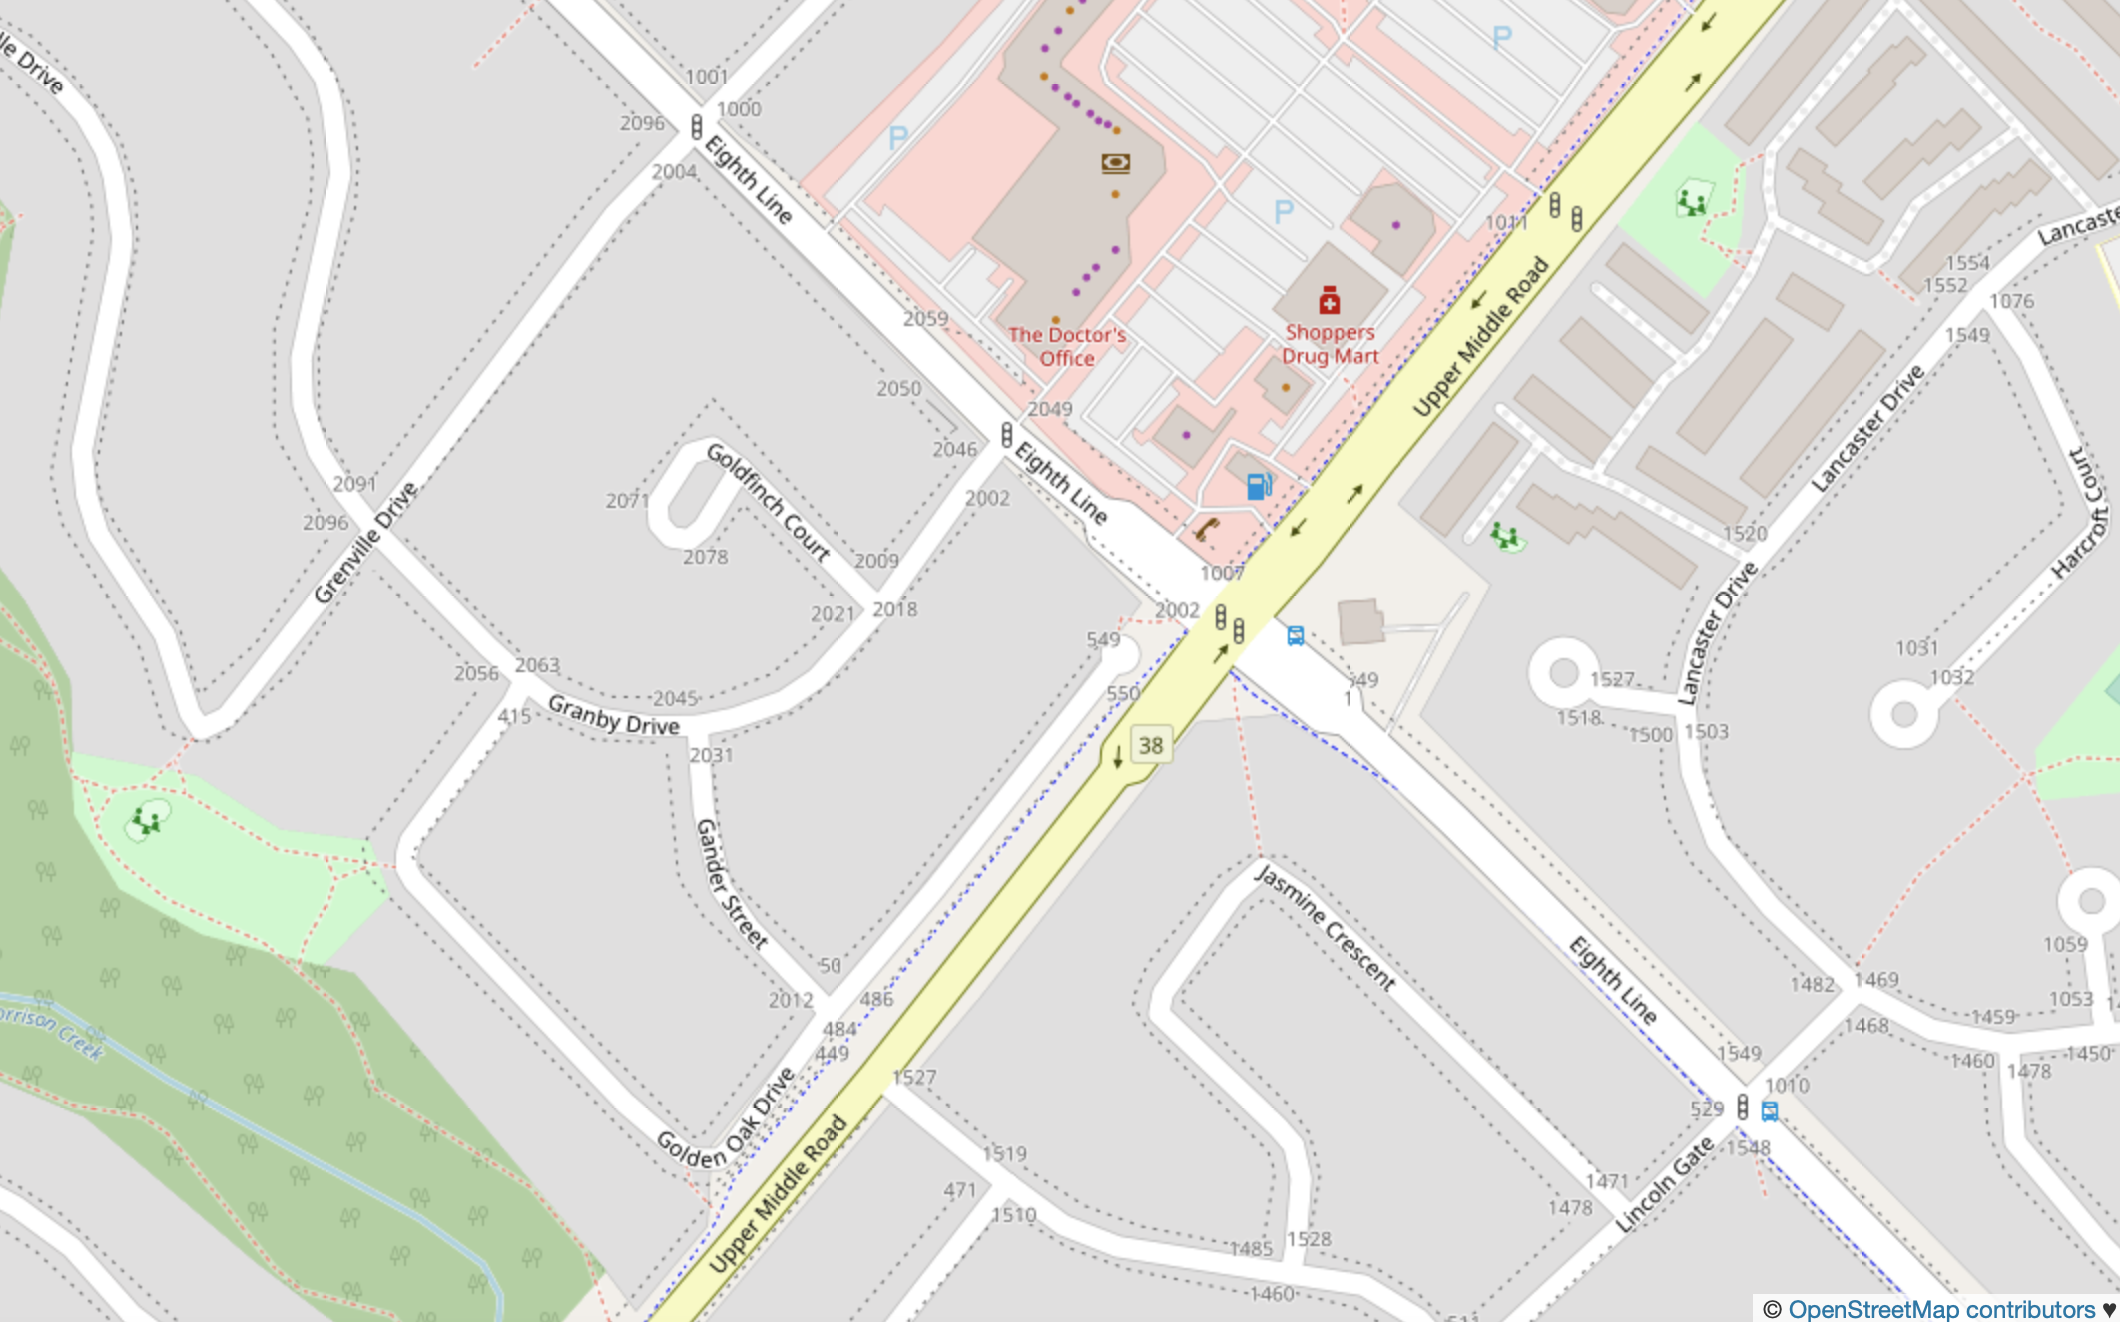 OpenStreetMaps Contributors (CC BY-SA 2.0)